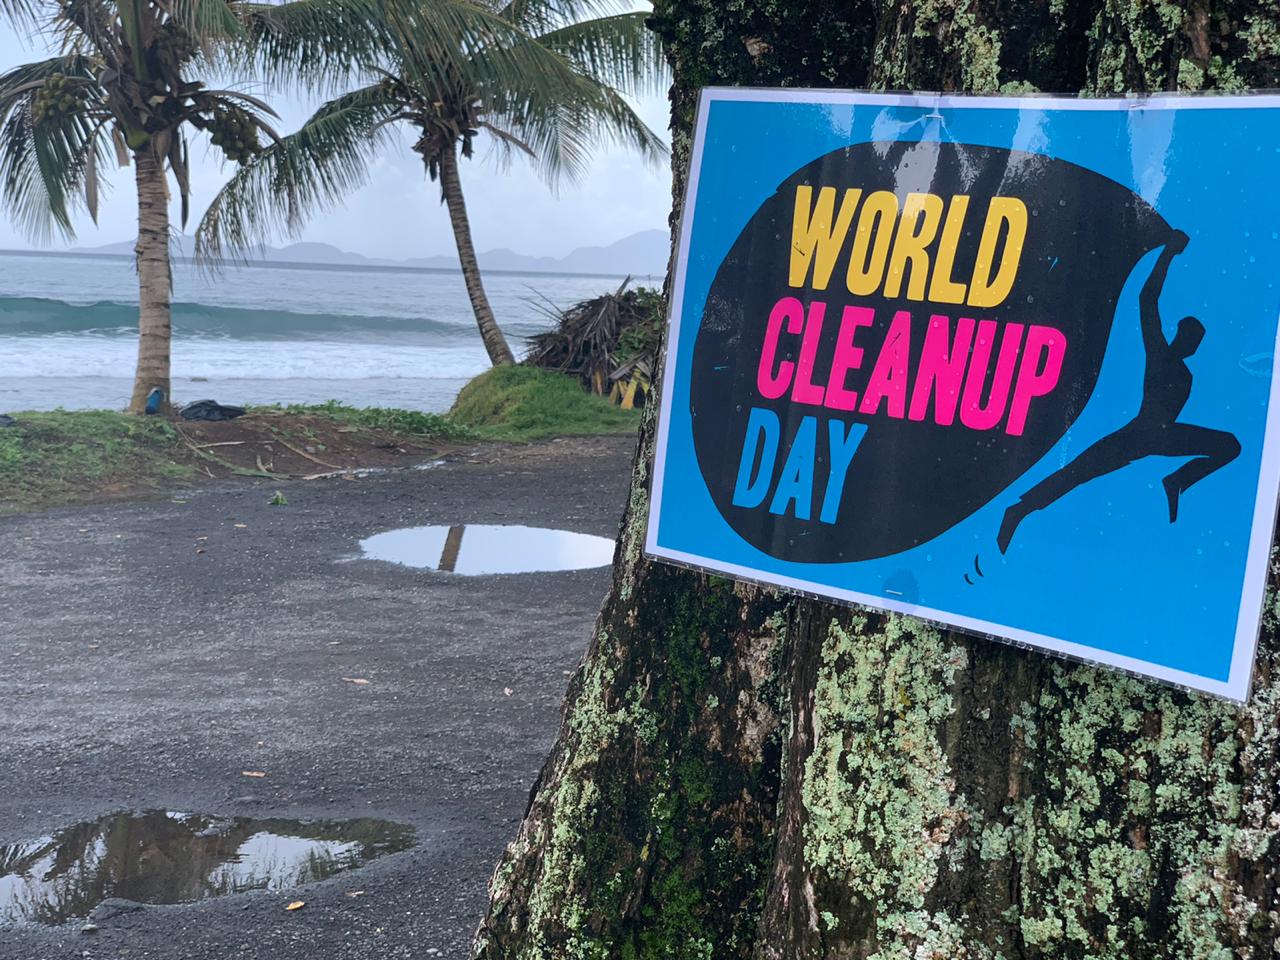     Opération de nettoyage World Clean Up Day à Trois-Rivières

